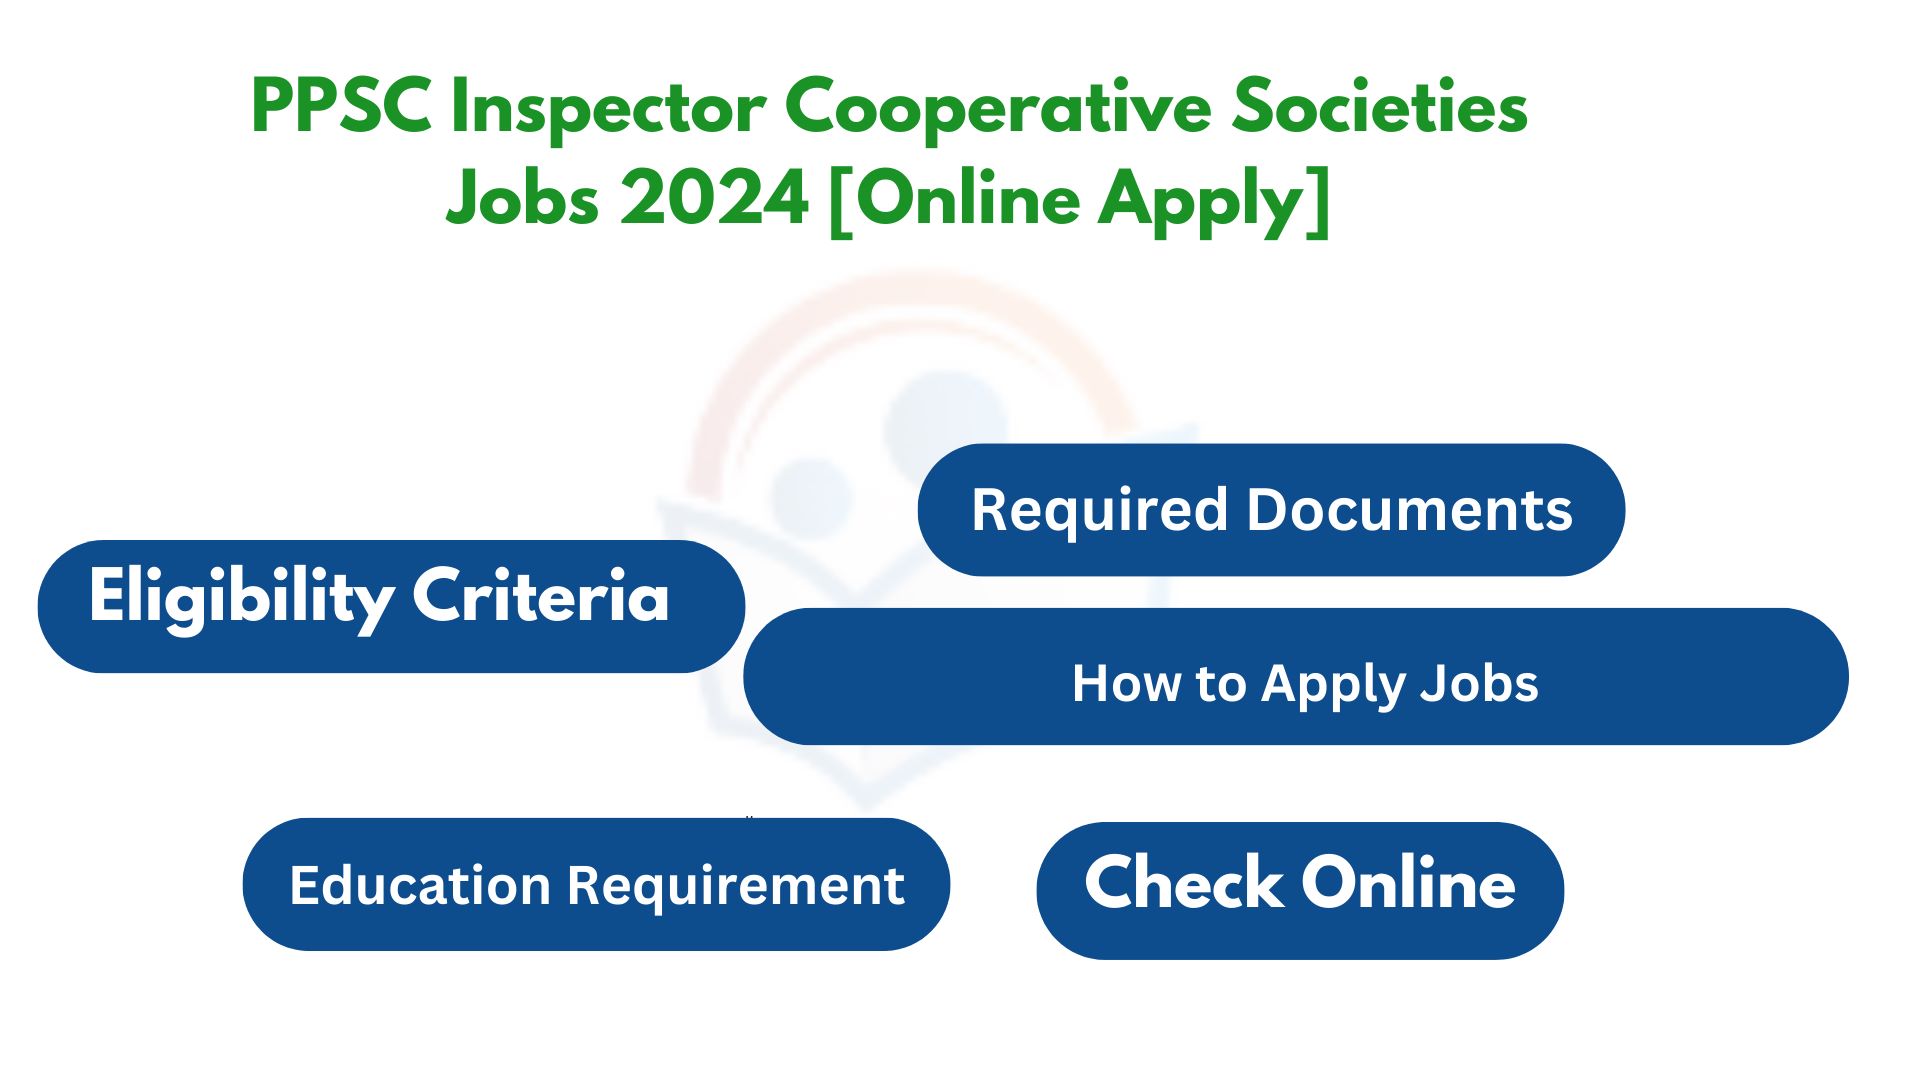 PPSC Inspector Cooperative Societies Jobs 2024